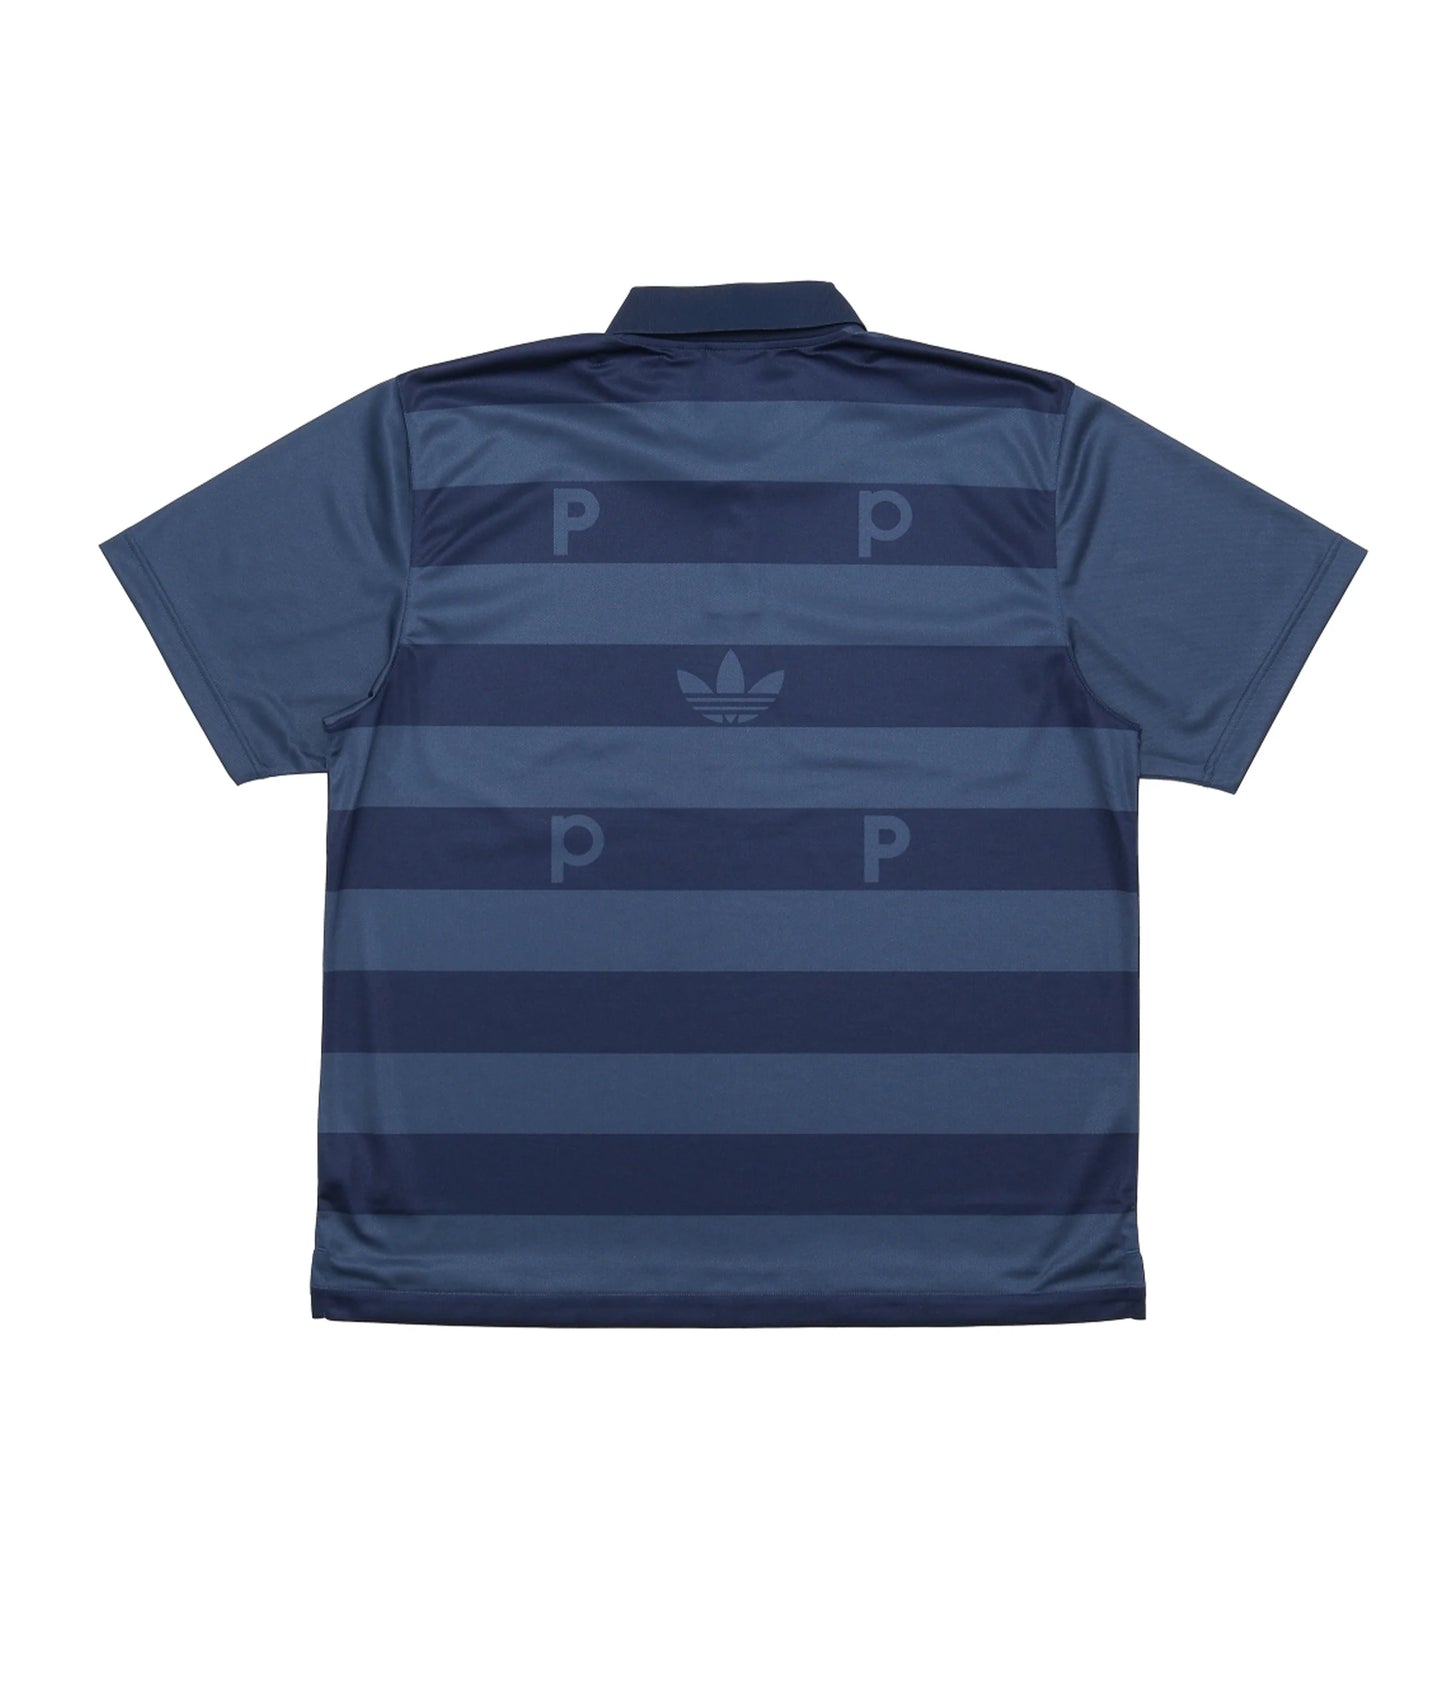 adidas X Pop Polo Shirt Crenav/Conavy